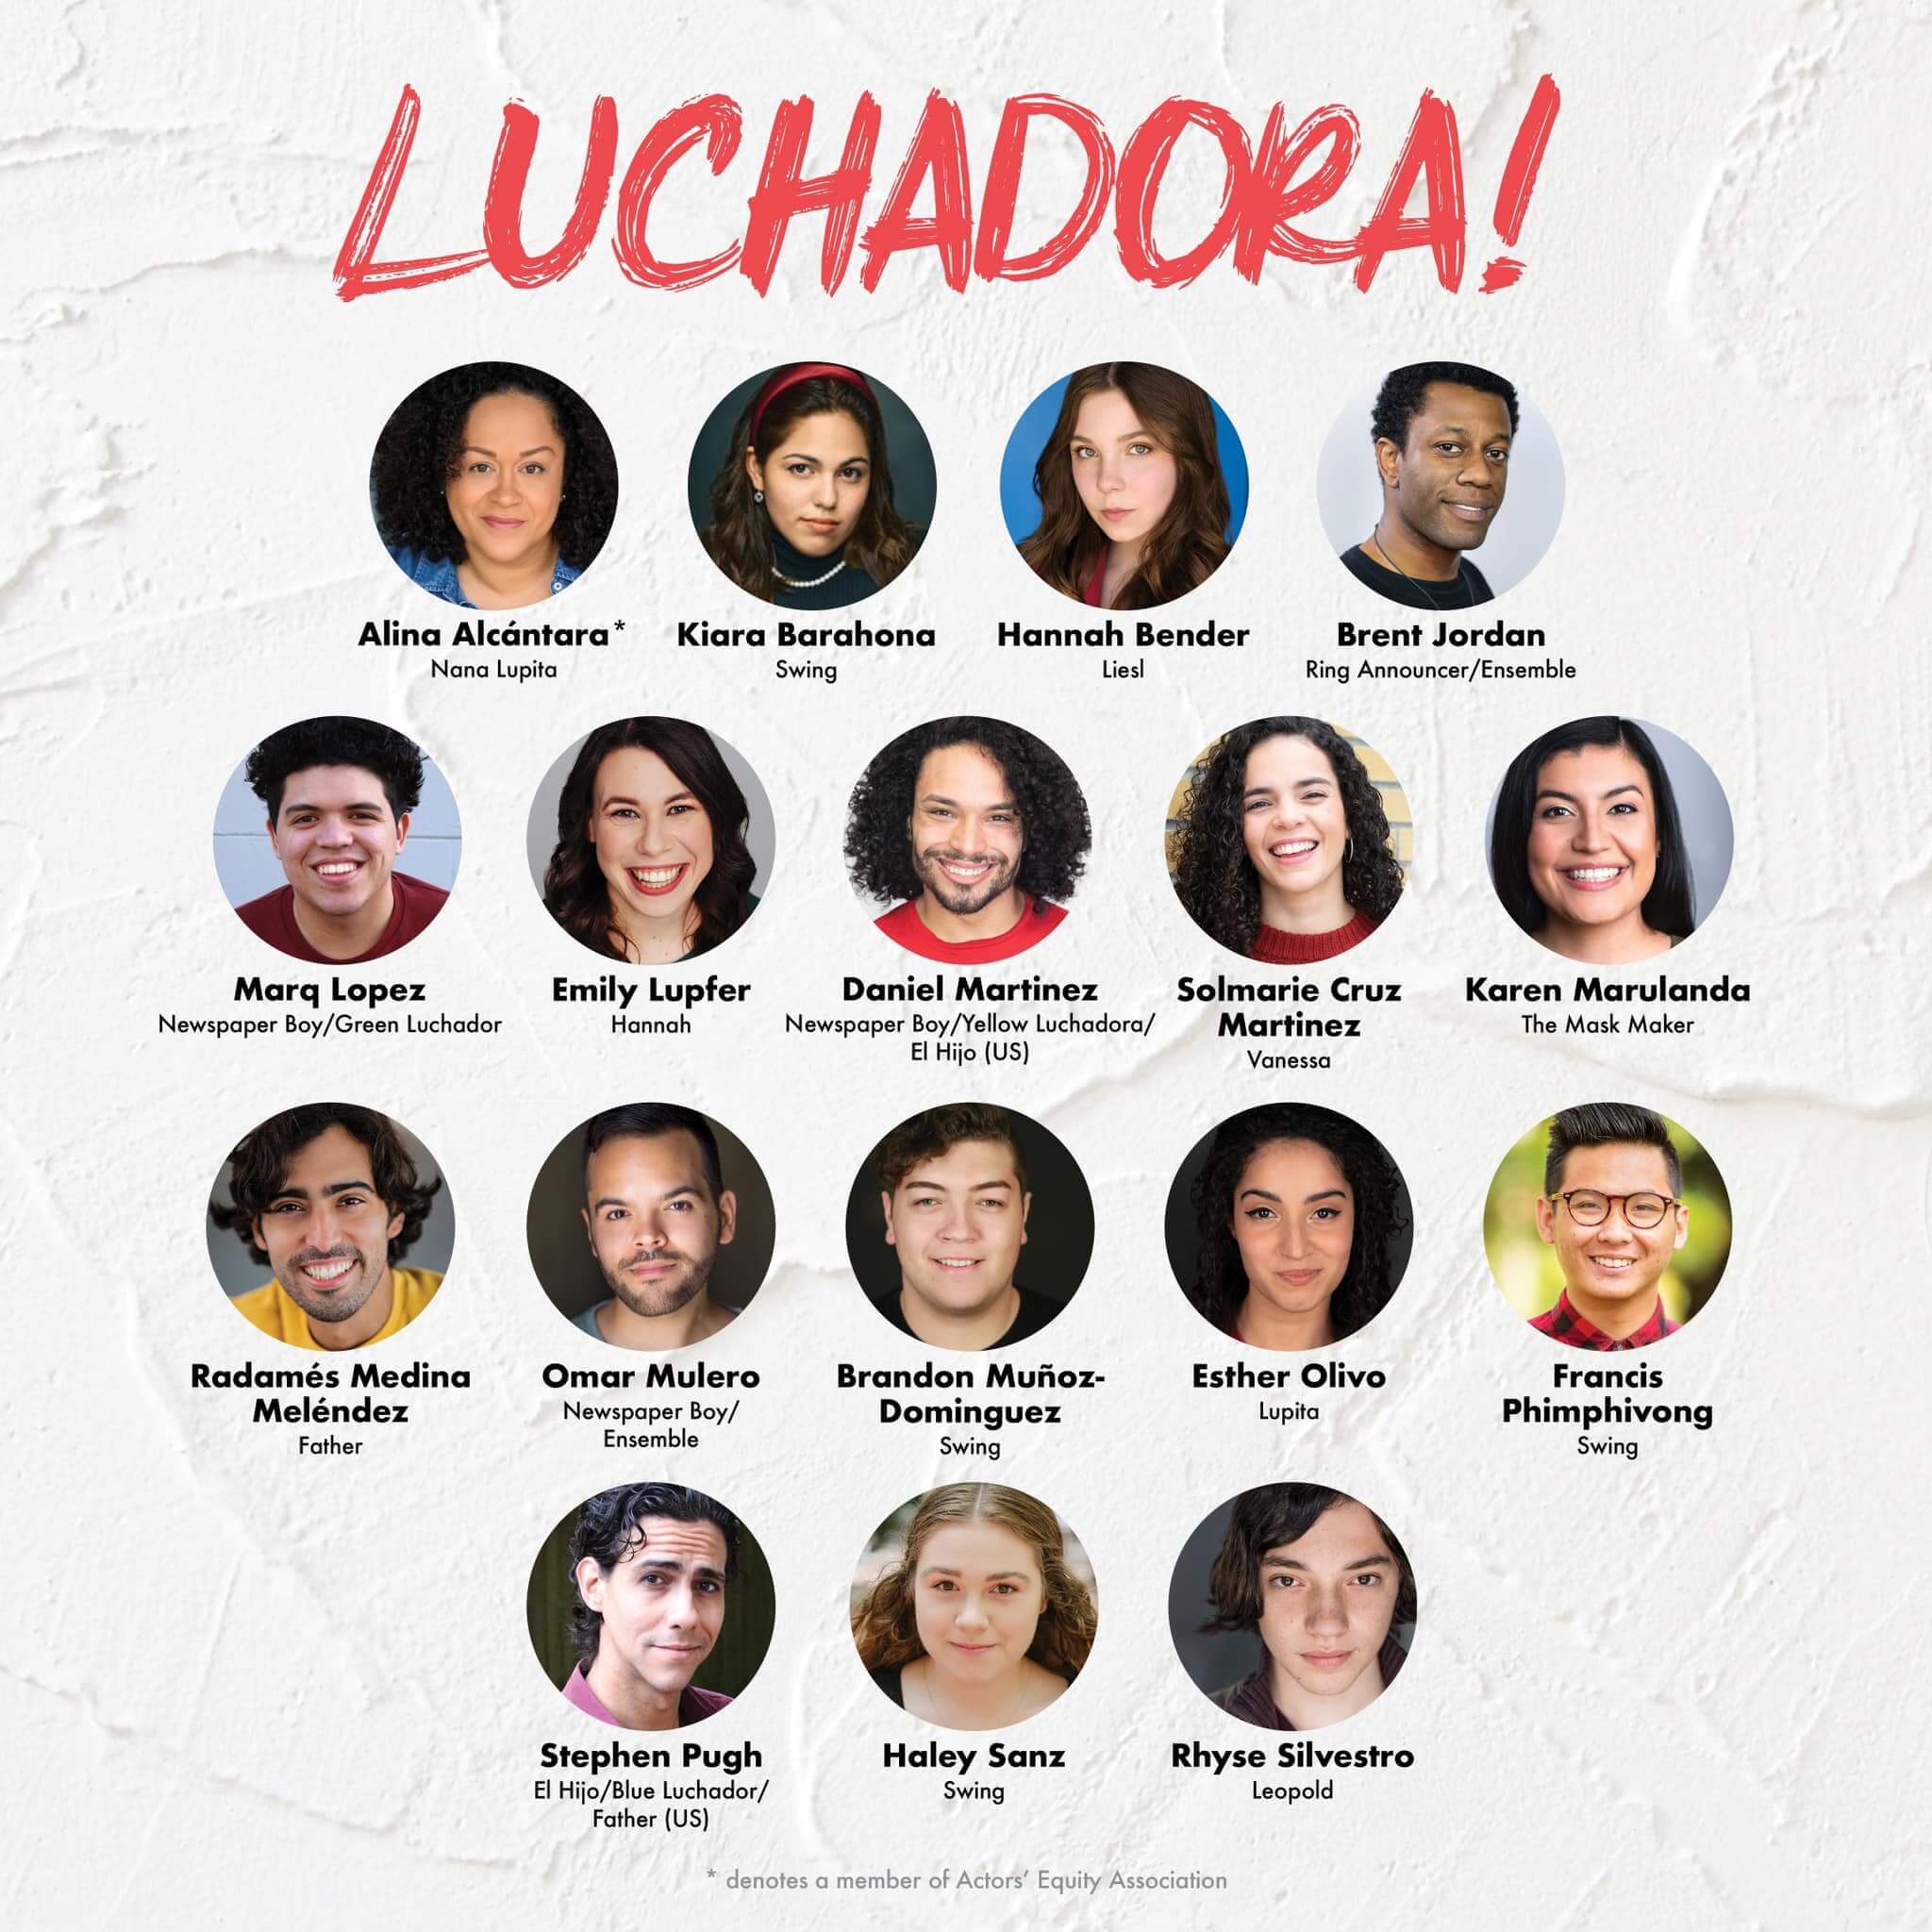 Meet the Cast of Luchadora!